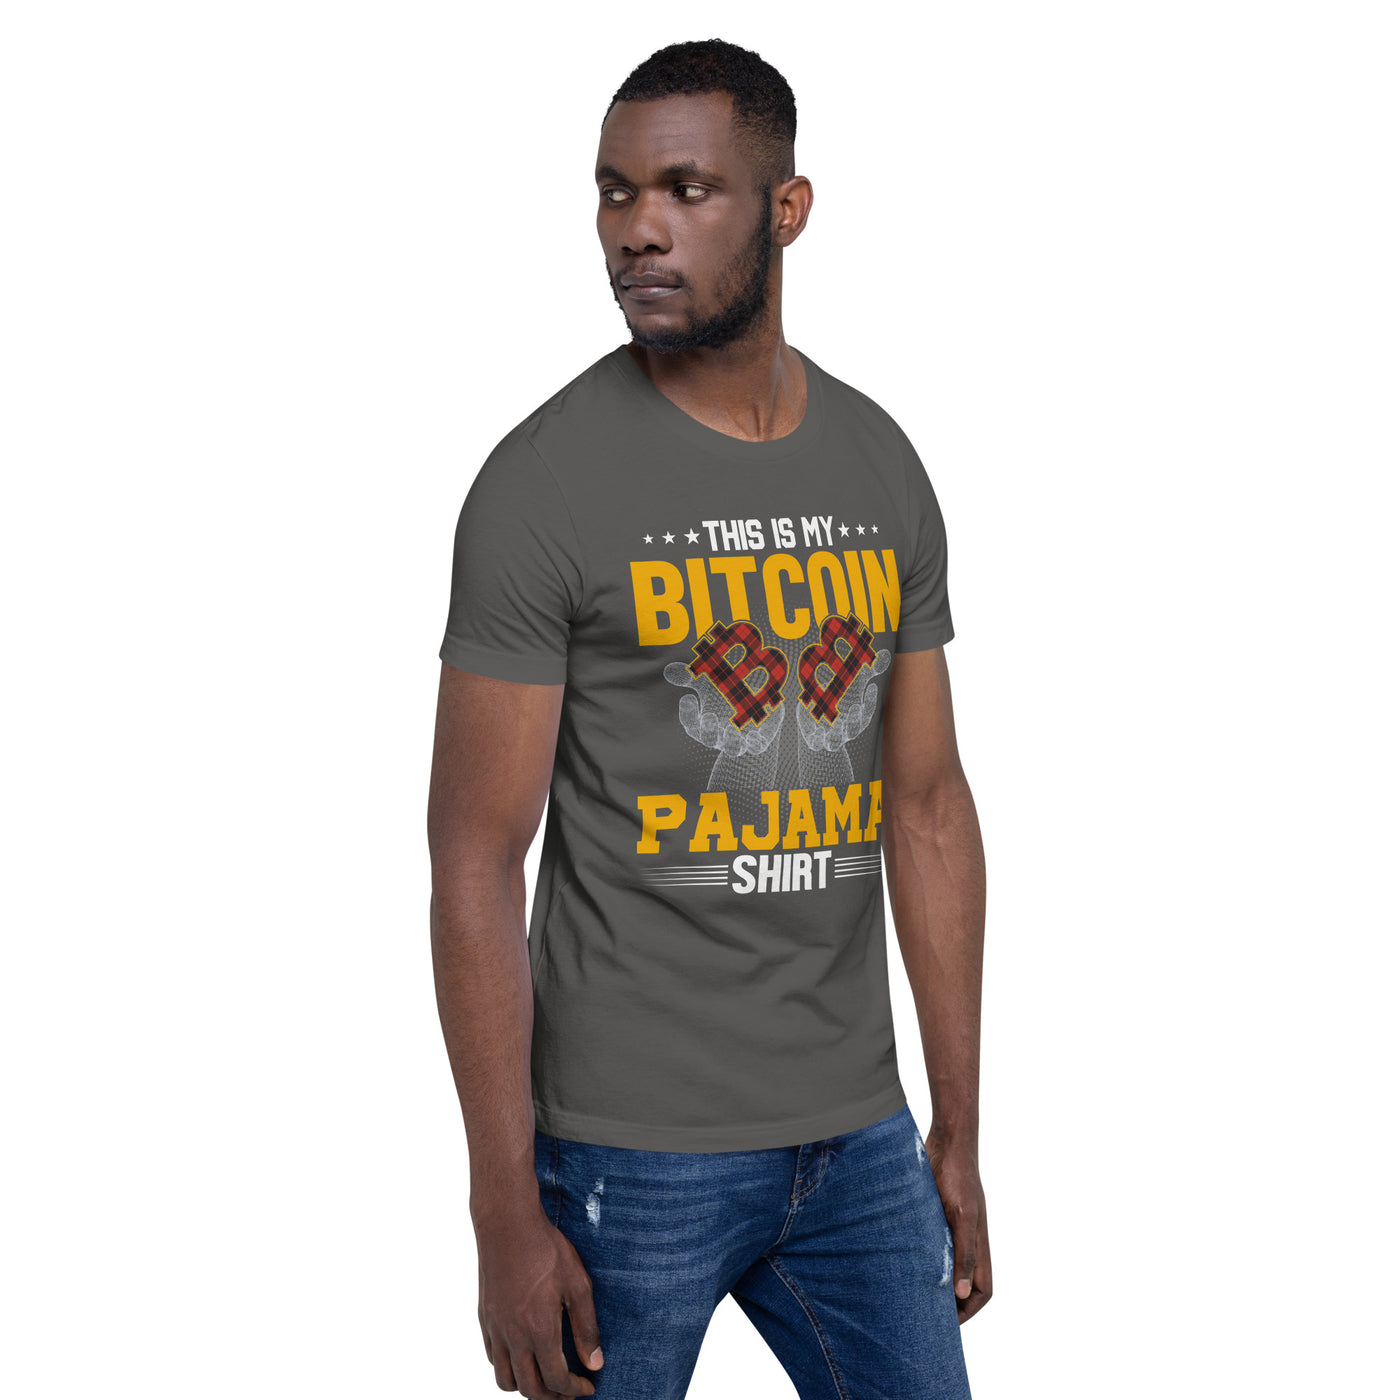 This is My Bitcoin Pajama Shirt Unisex t-shirt